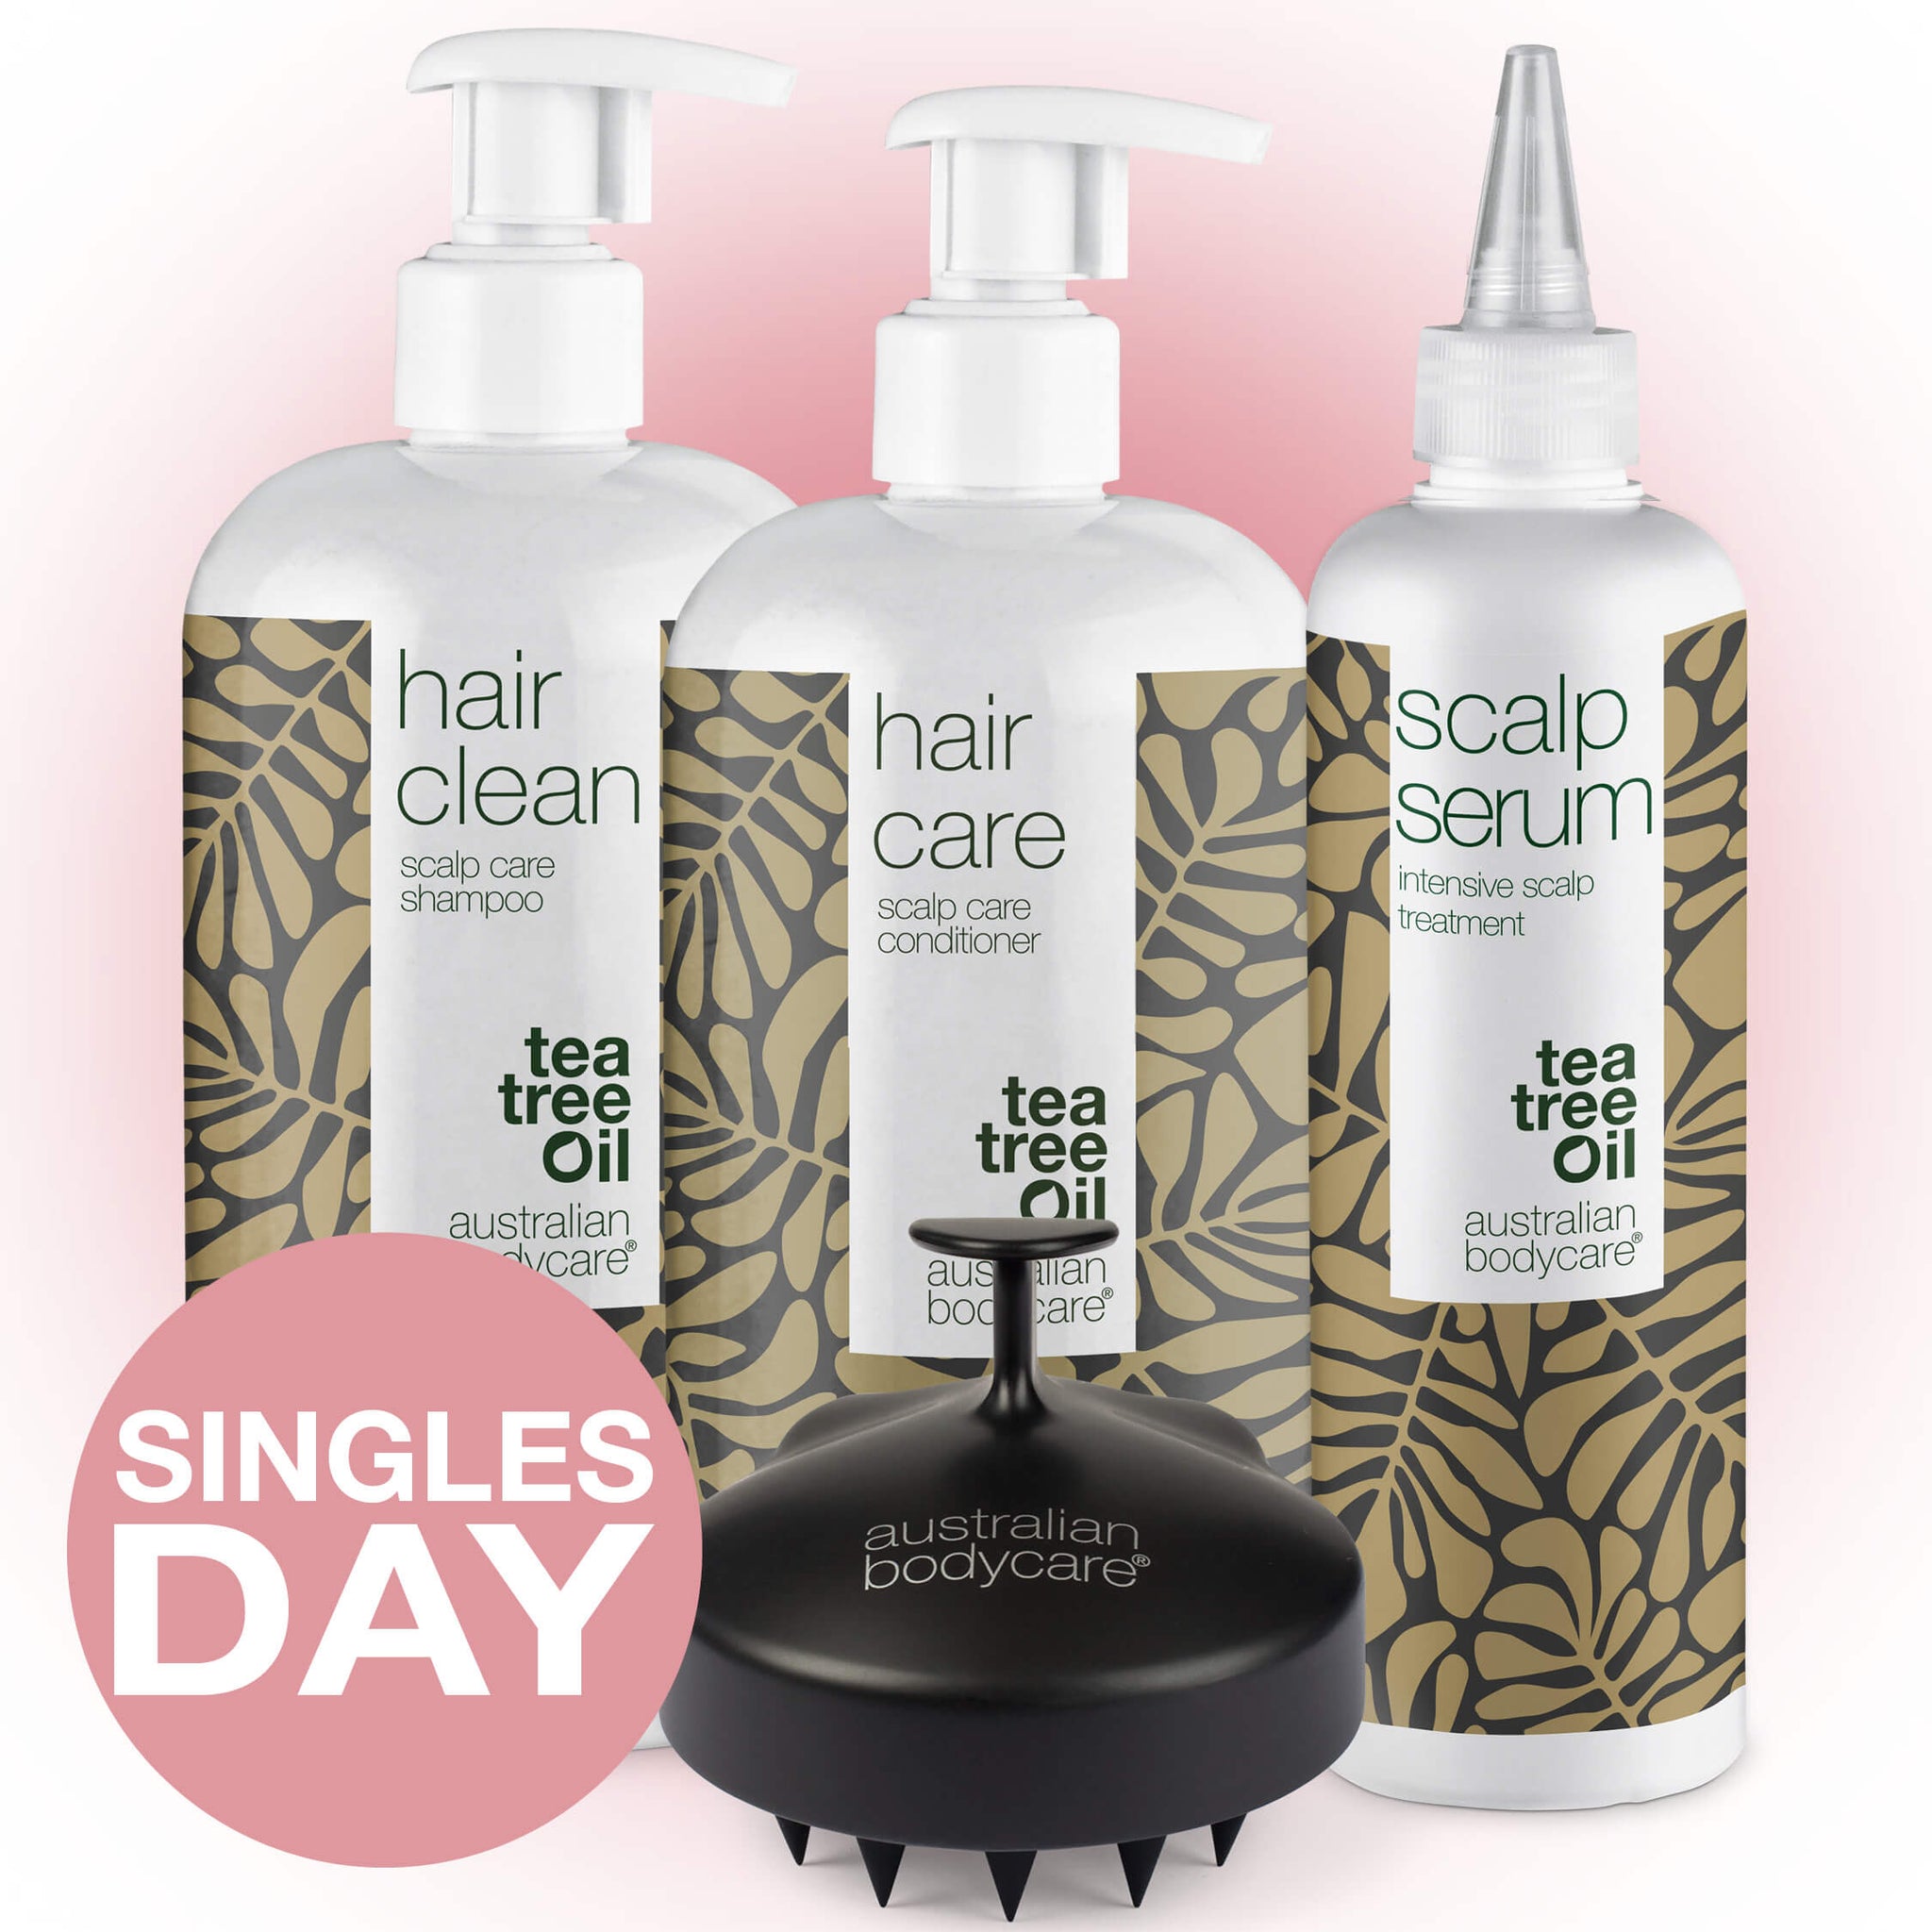 Offerta Single Day sulla cura dei capelli – Risparmia il 20%